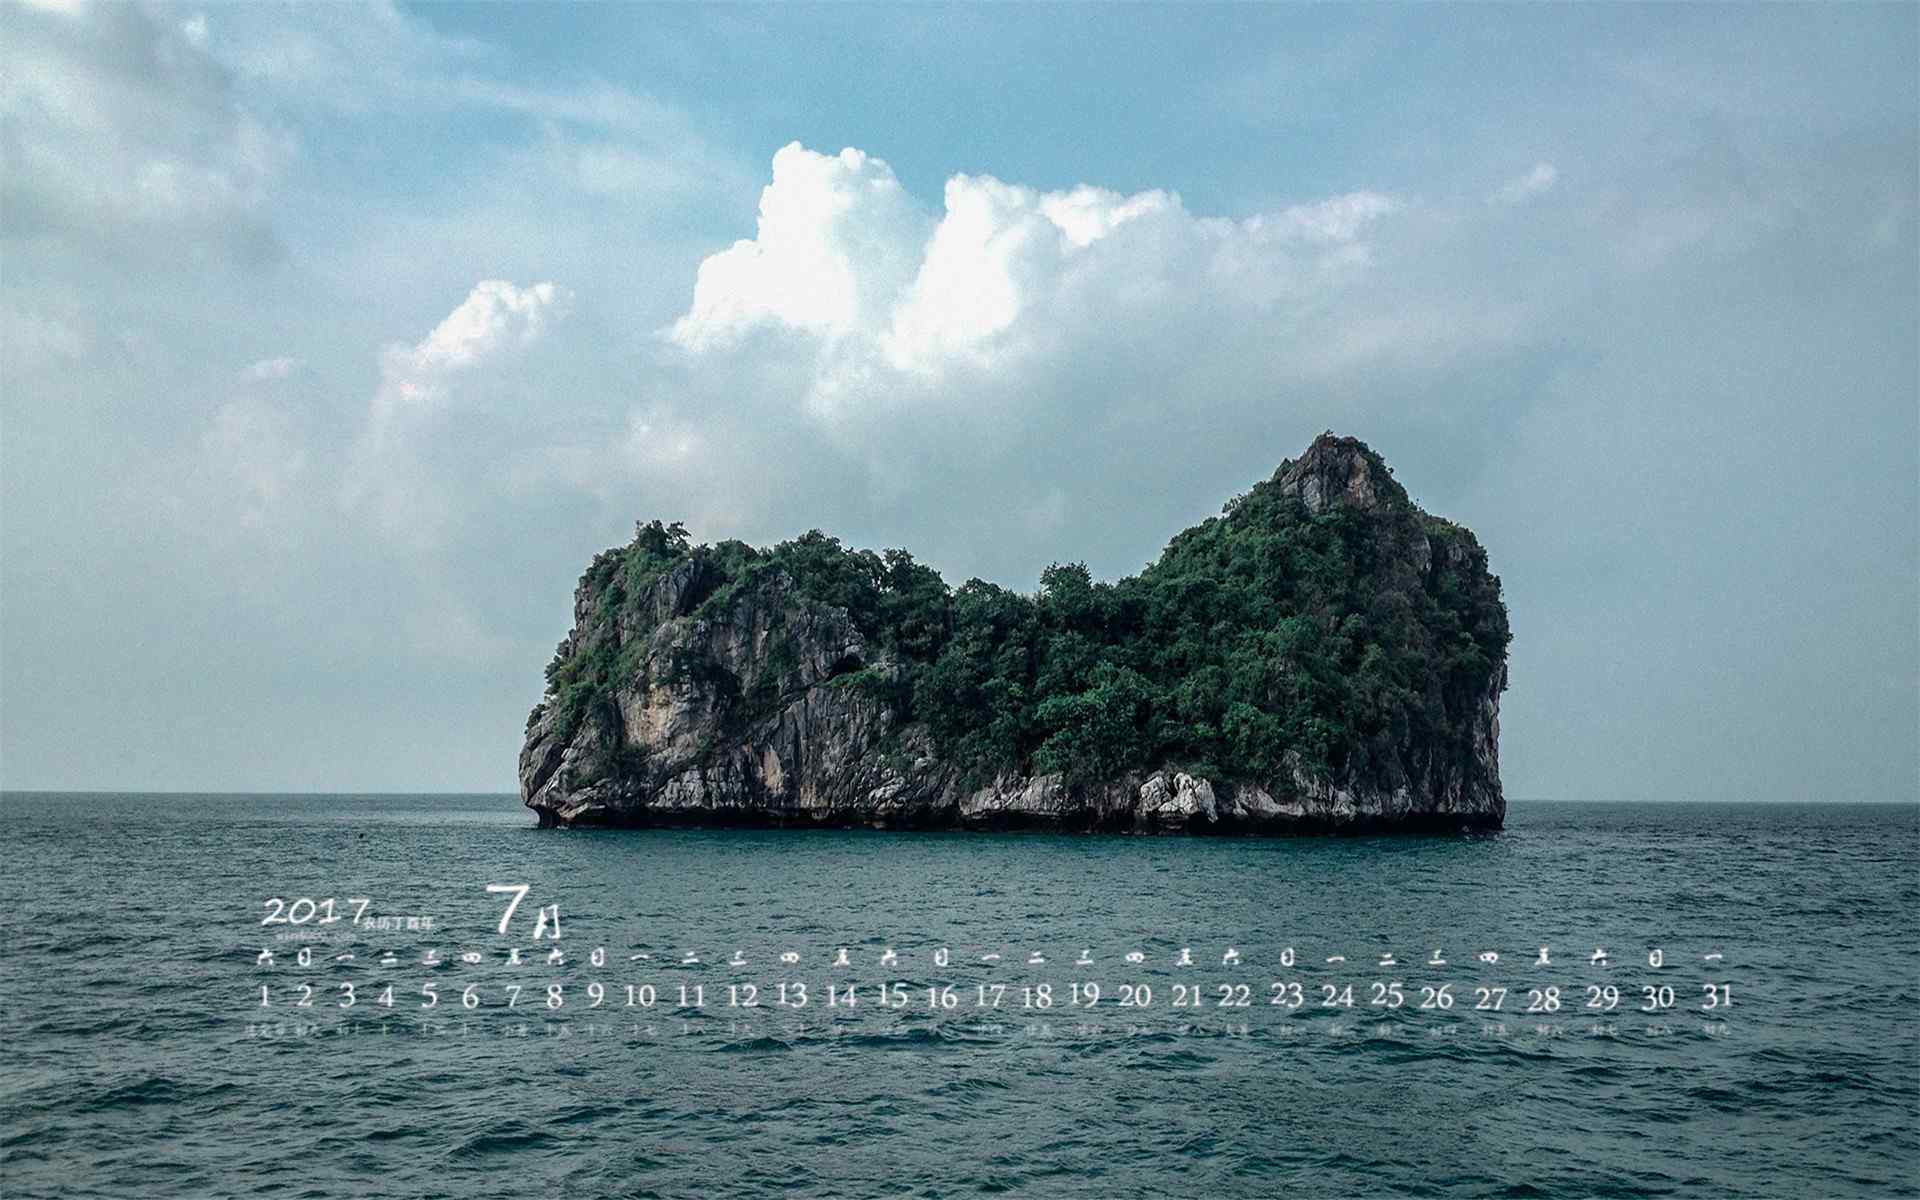 2017年7月日历海岛风景壁纸